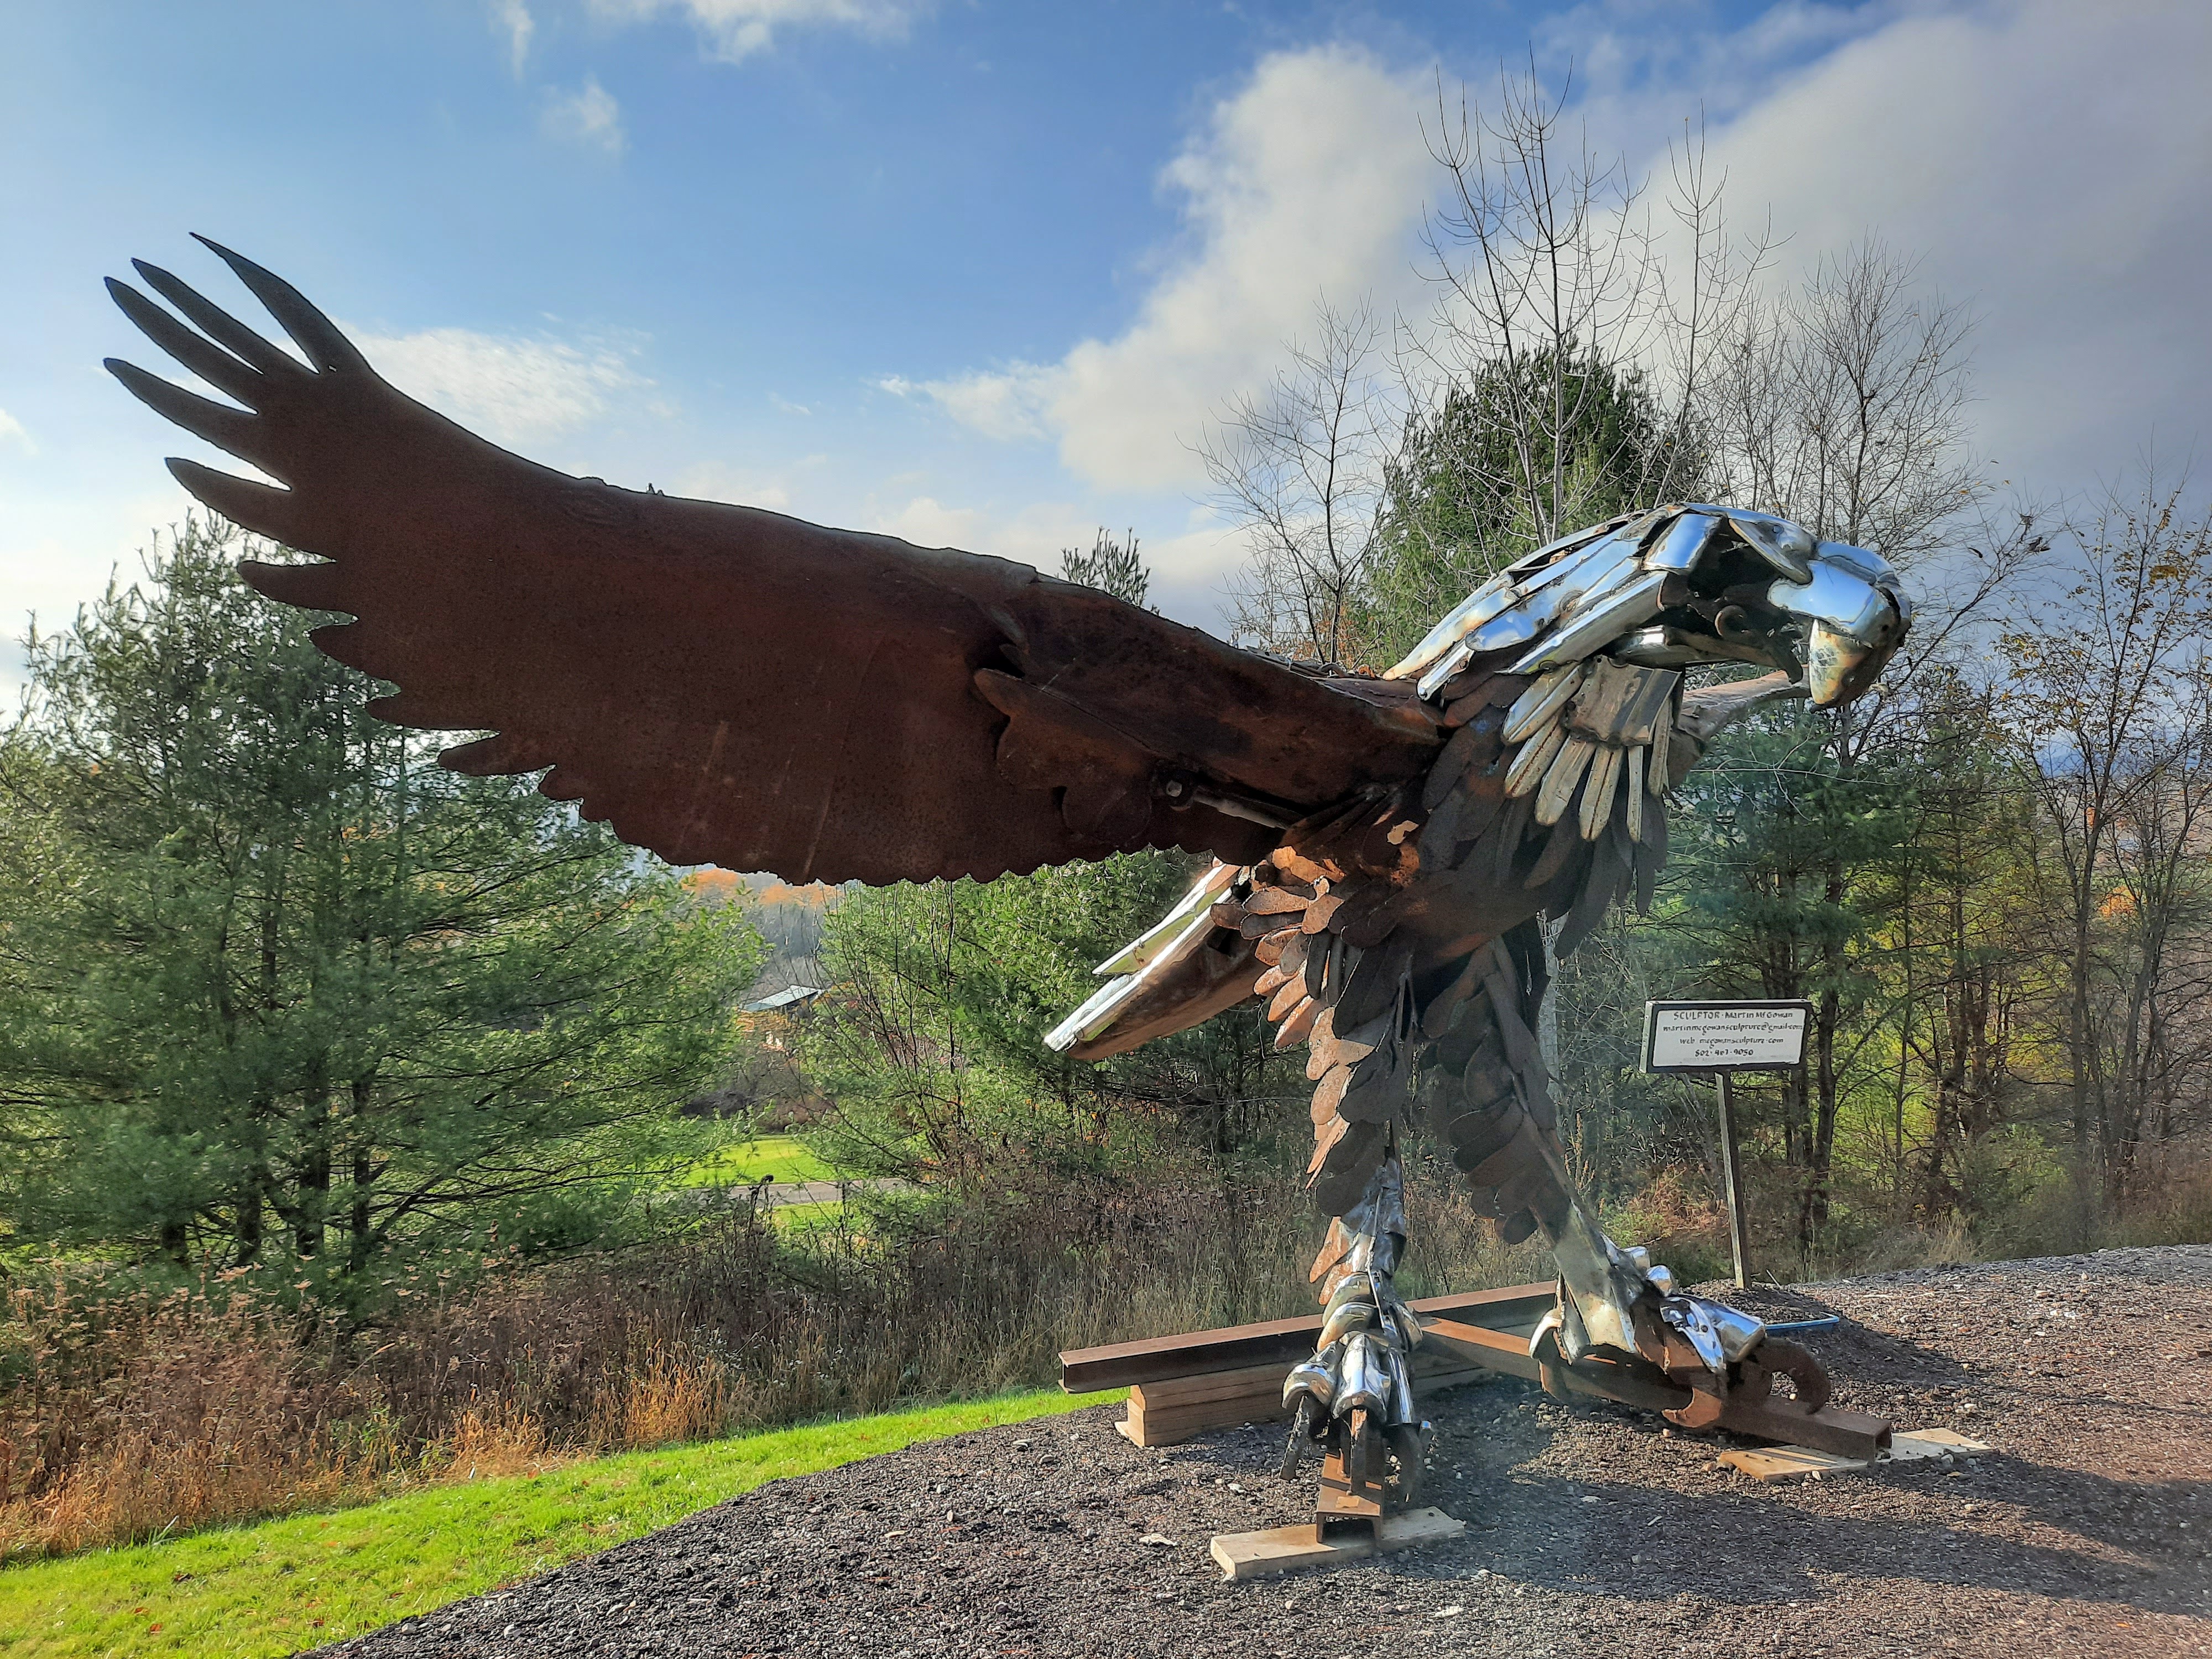 A chrome eagle sculpture along Route 100